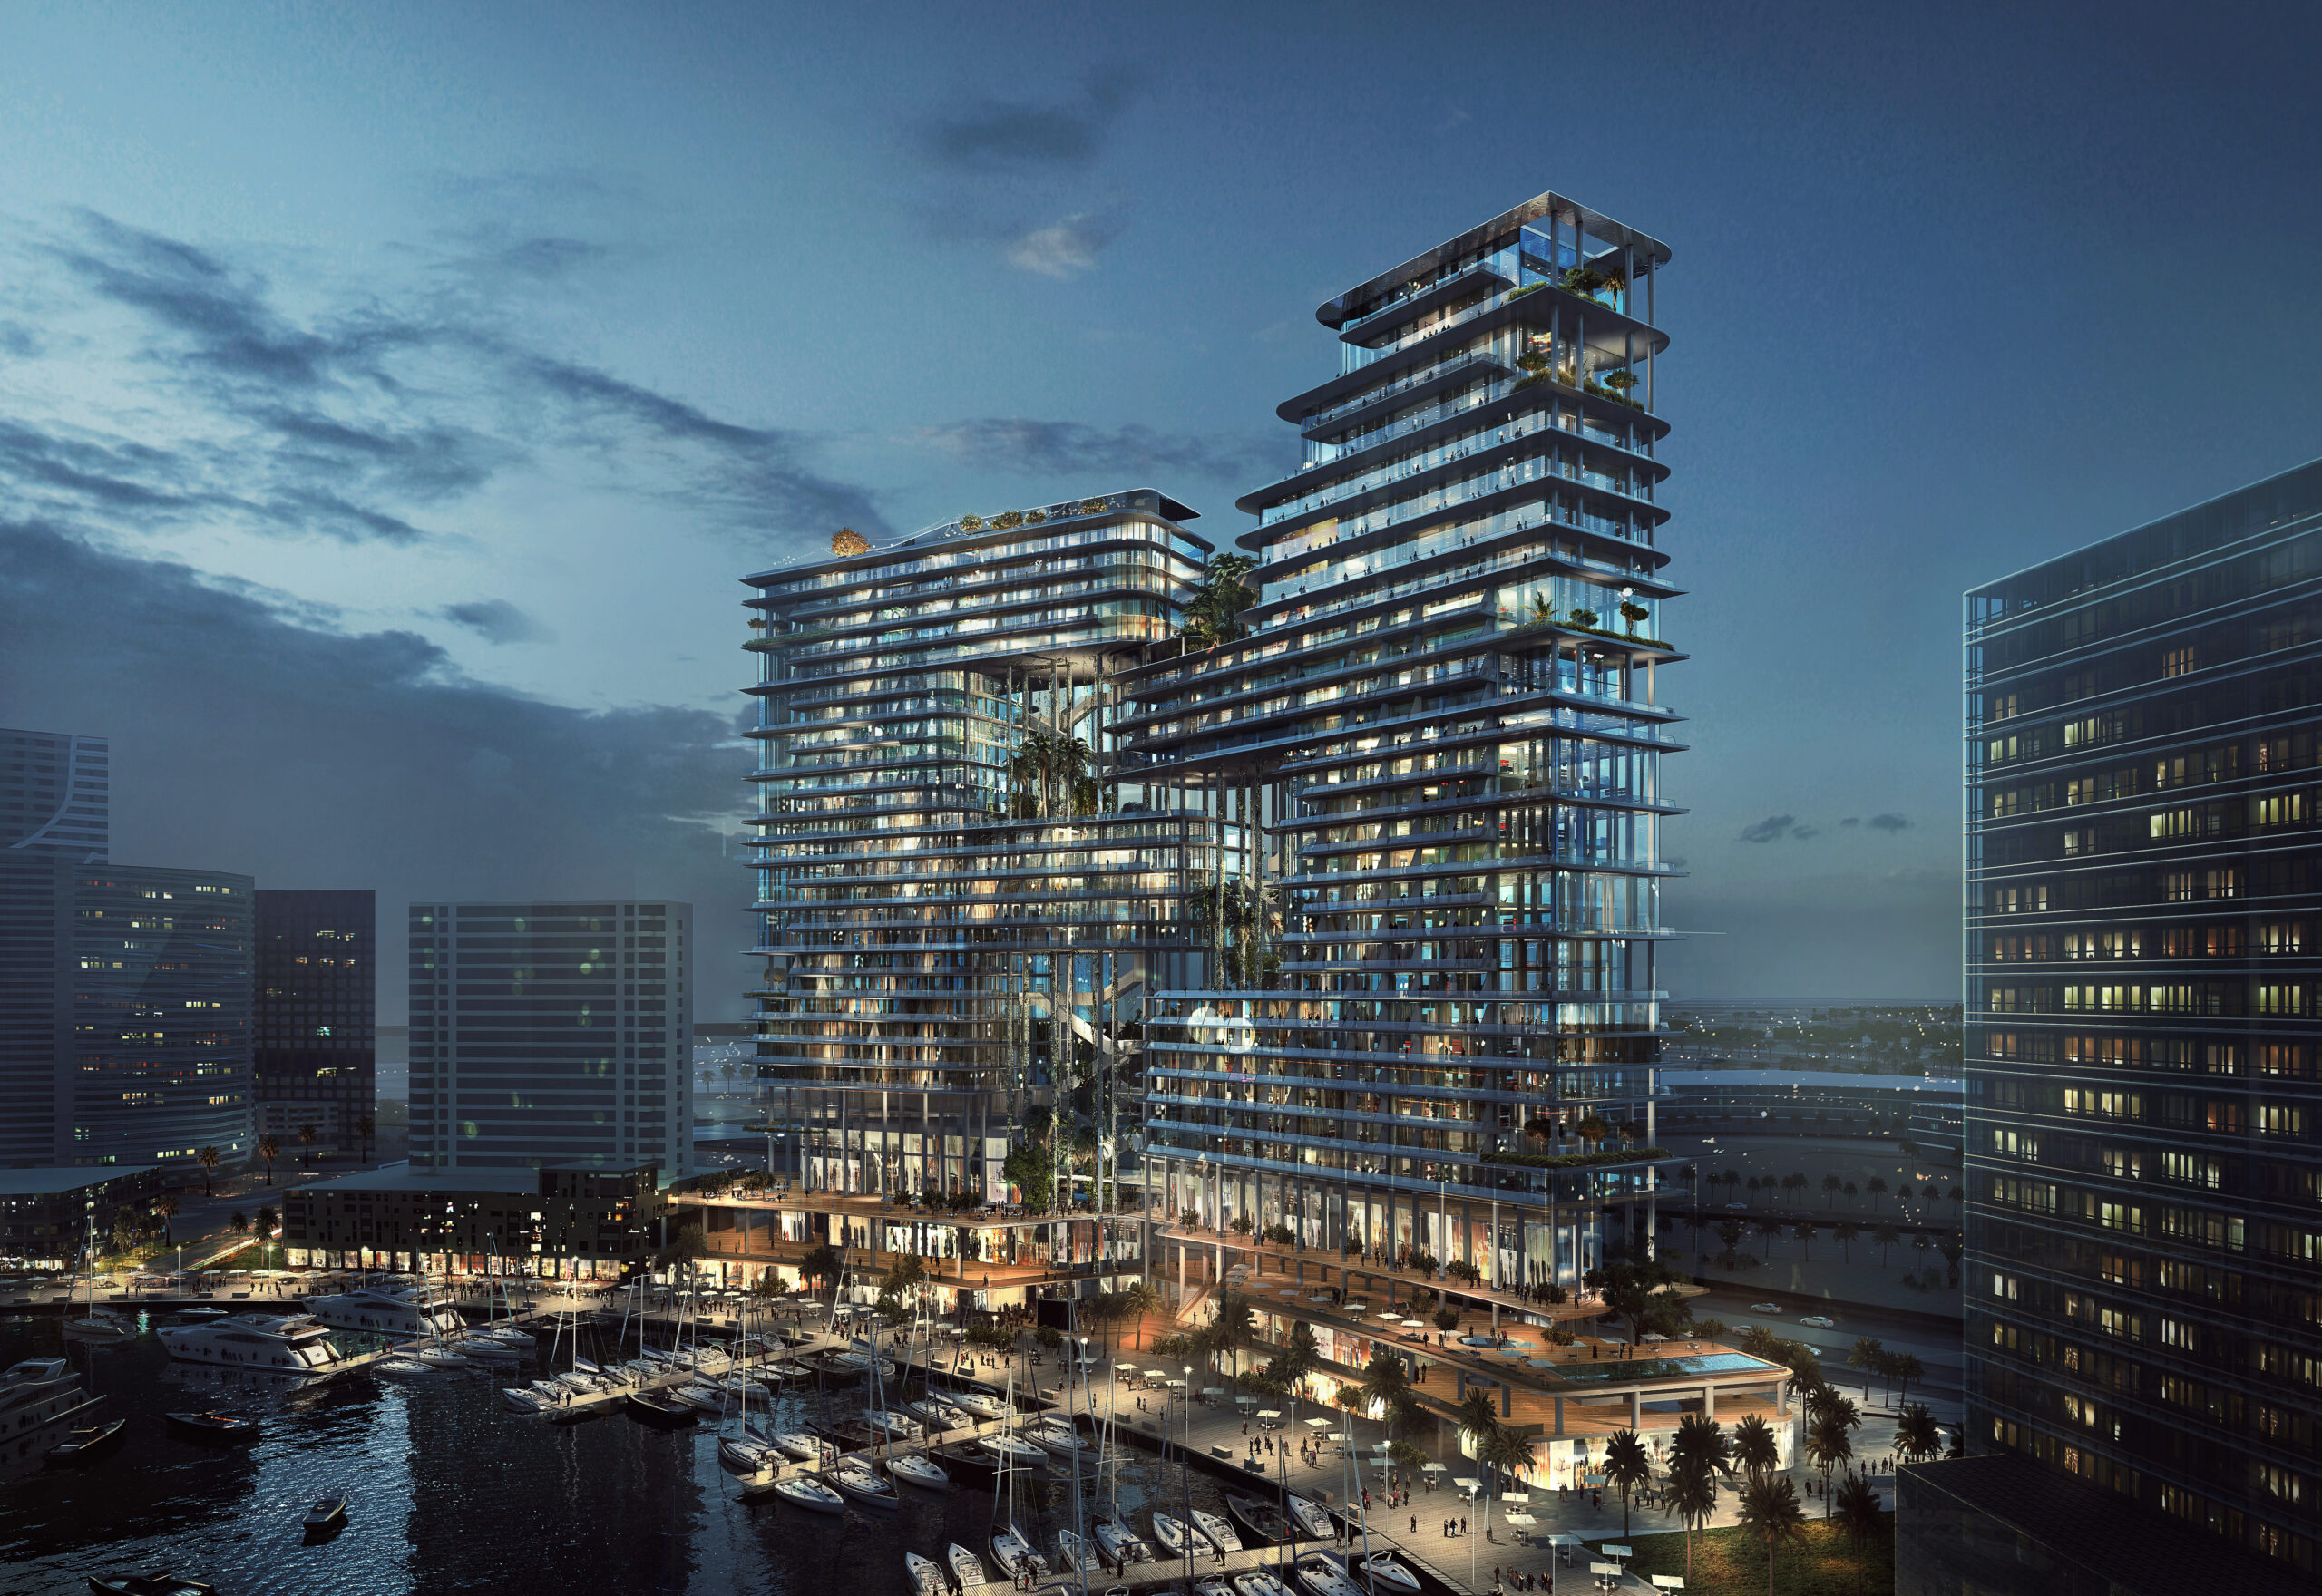 The Lana Dubai hotel slated for 2024